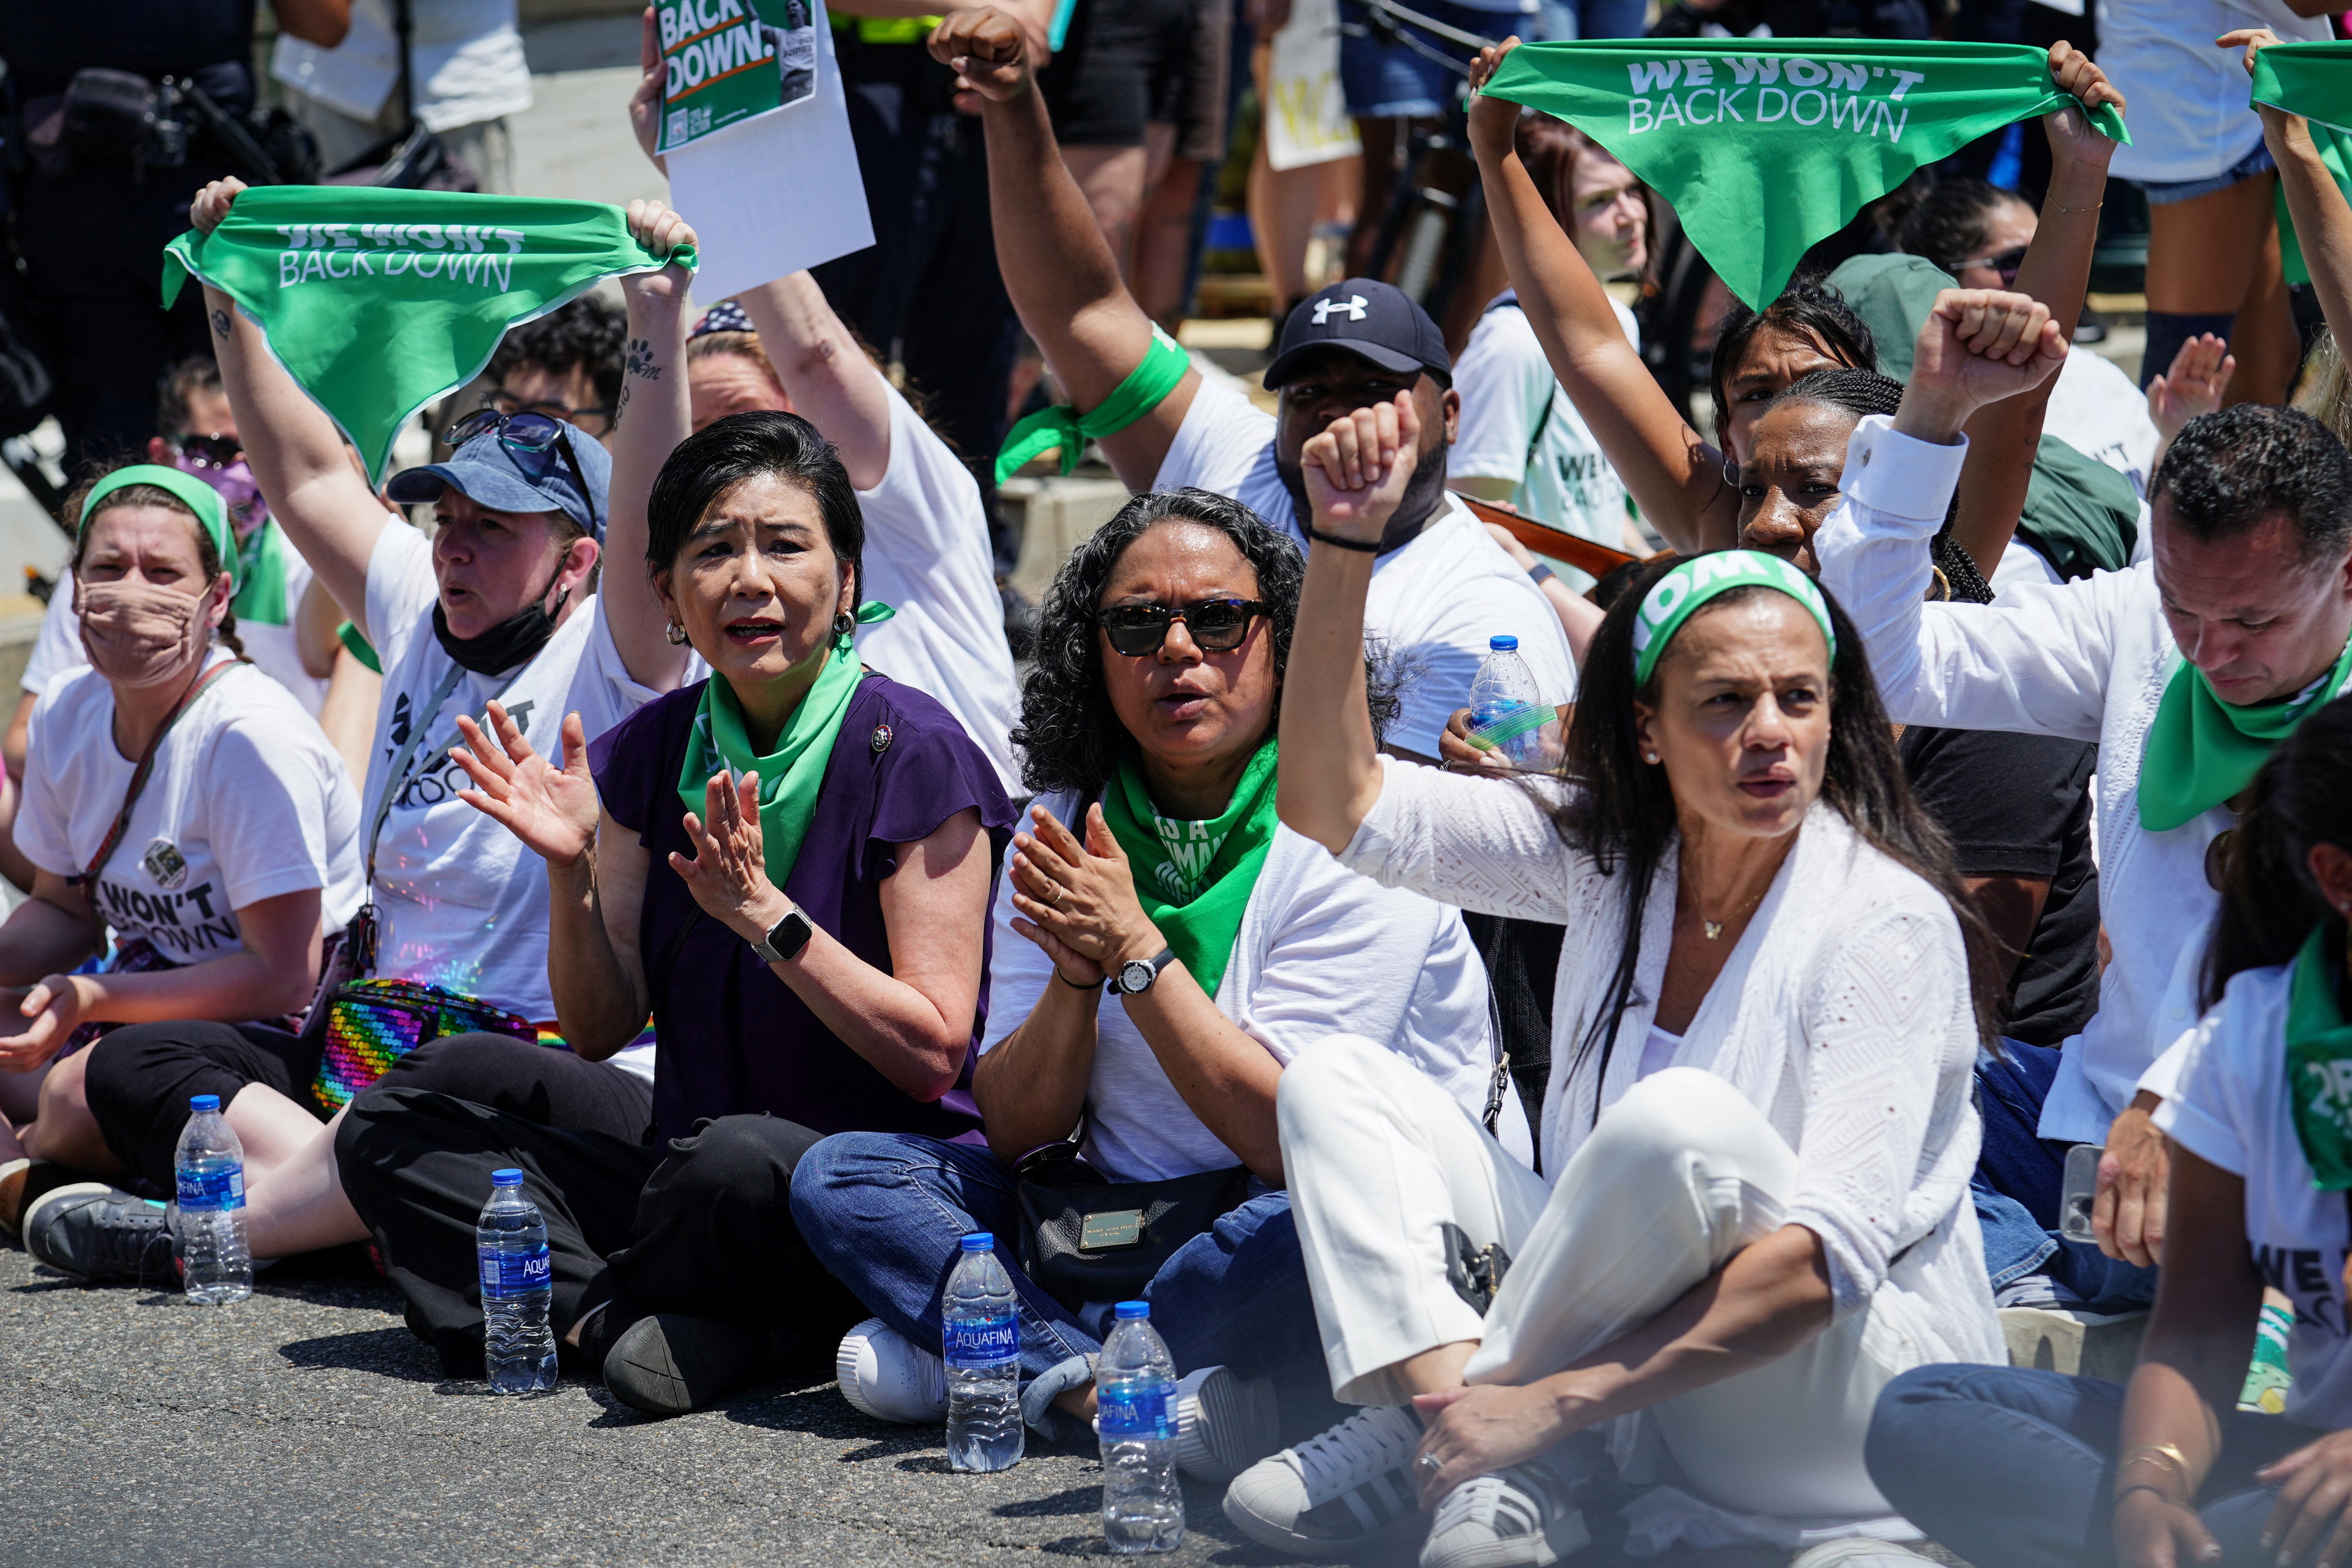 La representante de EE. UU. Judy Chu (D-CA) y Alexis McGill Johnson, presidente y director ejecutivo de Planned Parenthood Federation of America, a la derecha, participan en una manifestación por el derecho al aborto frente a la Corte Suprema de EE. UU. en Washington, D.C., EE. UU., el 30 de junio de 2022. REUTERS/Sarah Silbiger